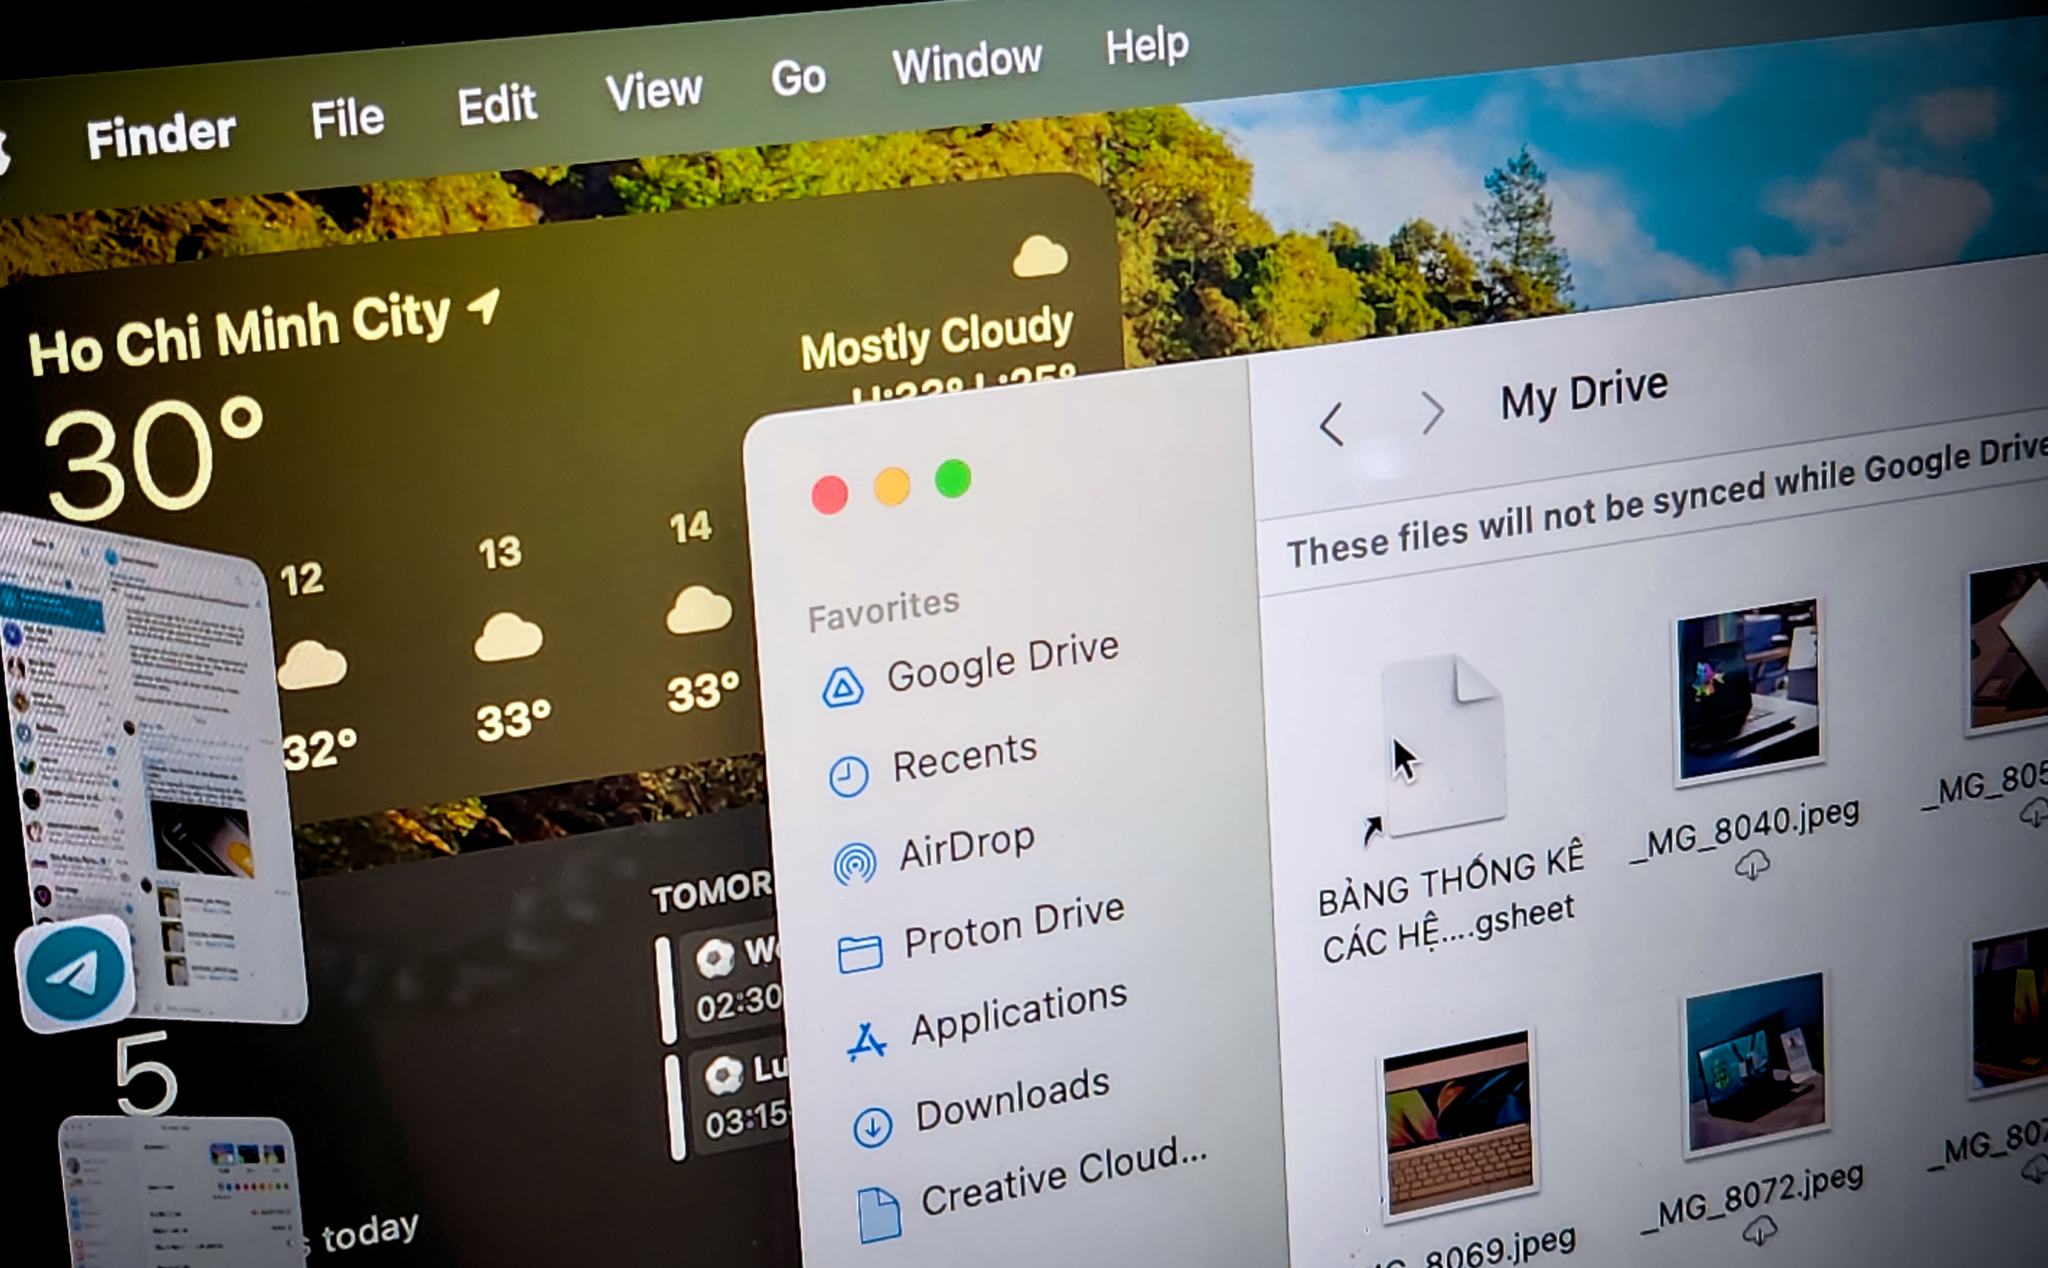 Cách thêm Google Drive vào Finder trên Mac để dễ quản lý